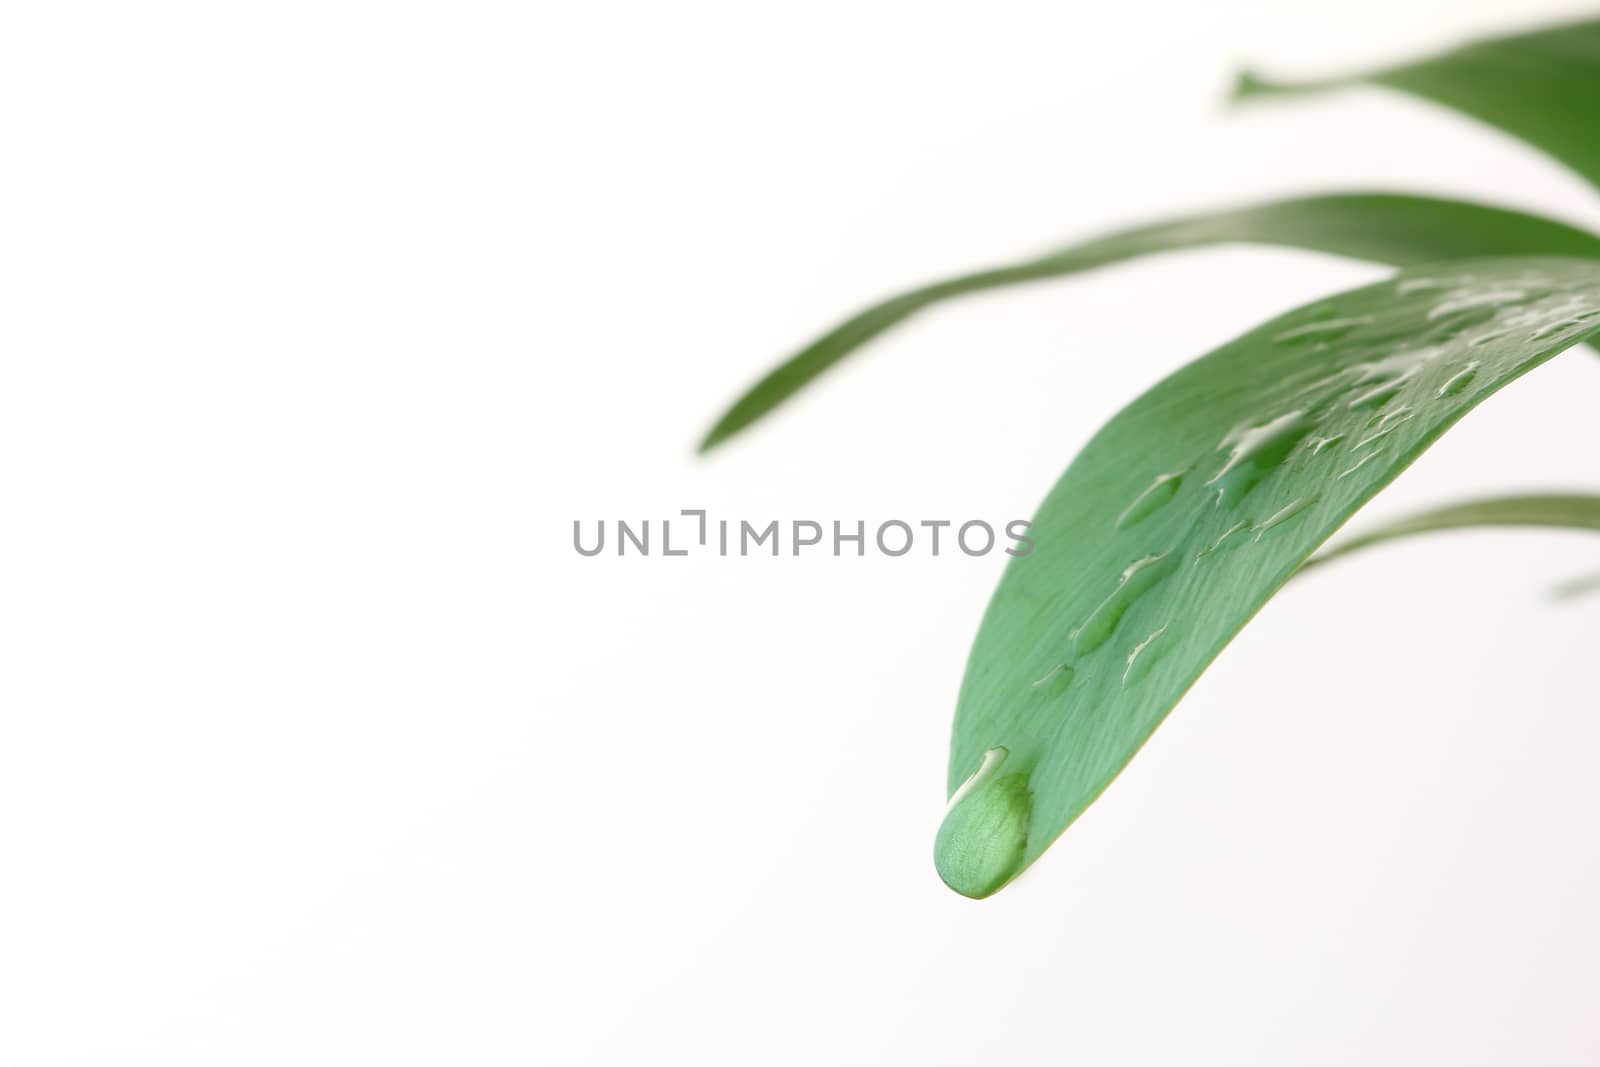 Waterdrop on green leaf by wyoosumran